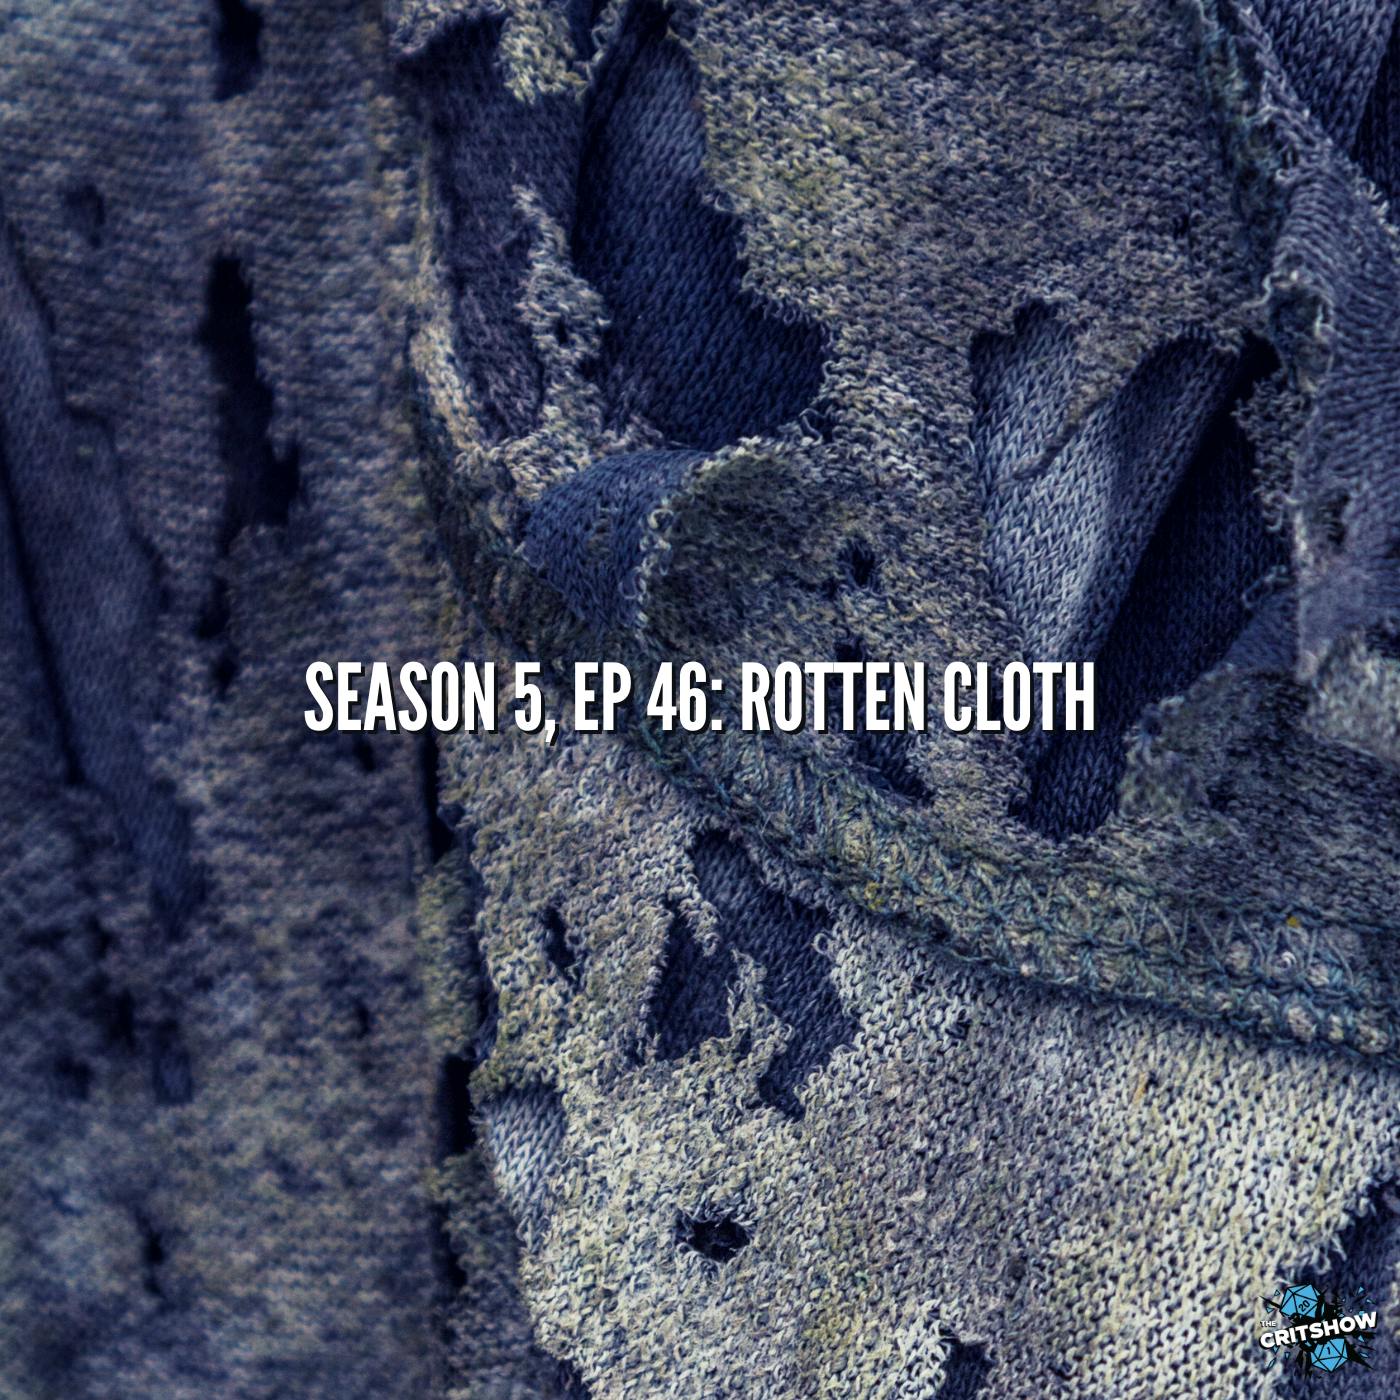 Rotten Cloth (S5, E46)